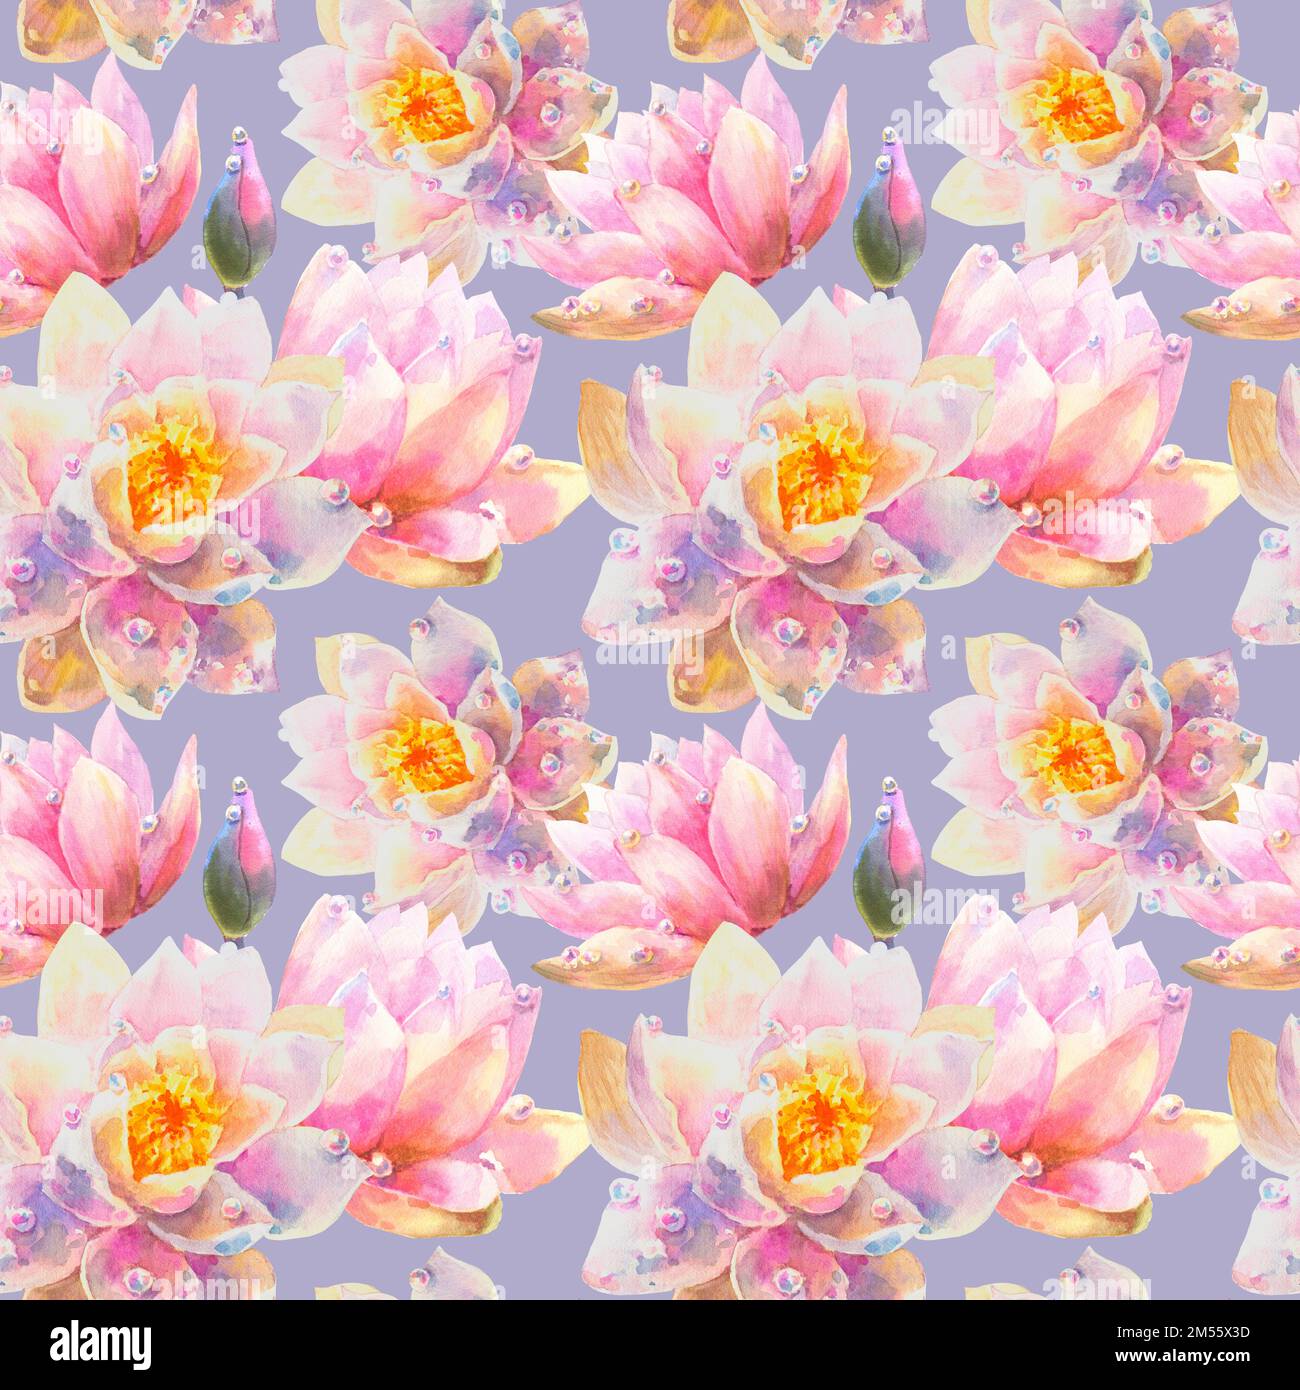 Aquarell Nahtloses Muster mit romantischen Blüten von Seerosen auf violettem Hintergrund. Hübsche Illustration für Tapeten, Textilien oder Geschenkpapier. Stockfoto